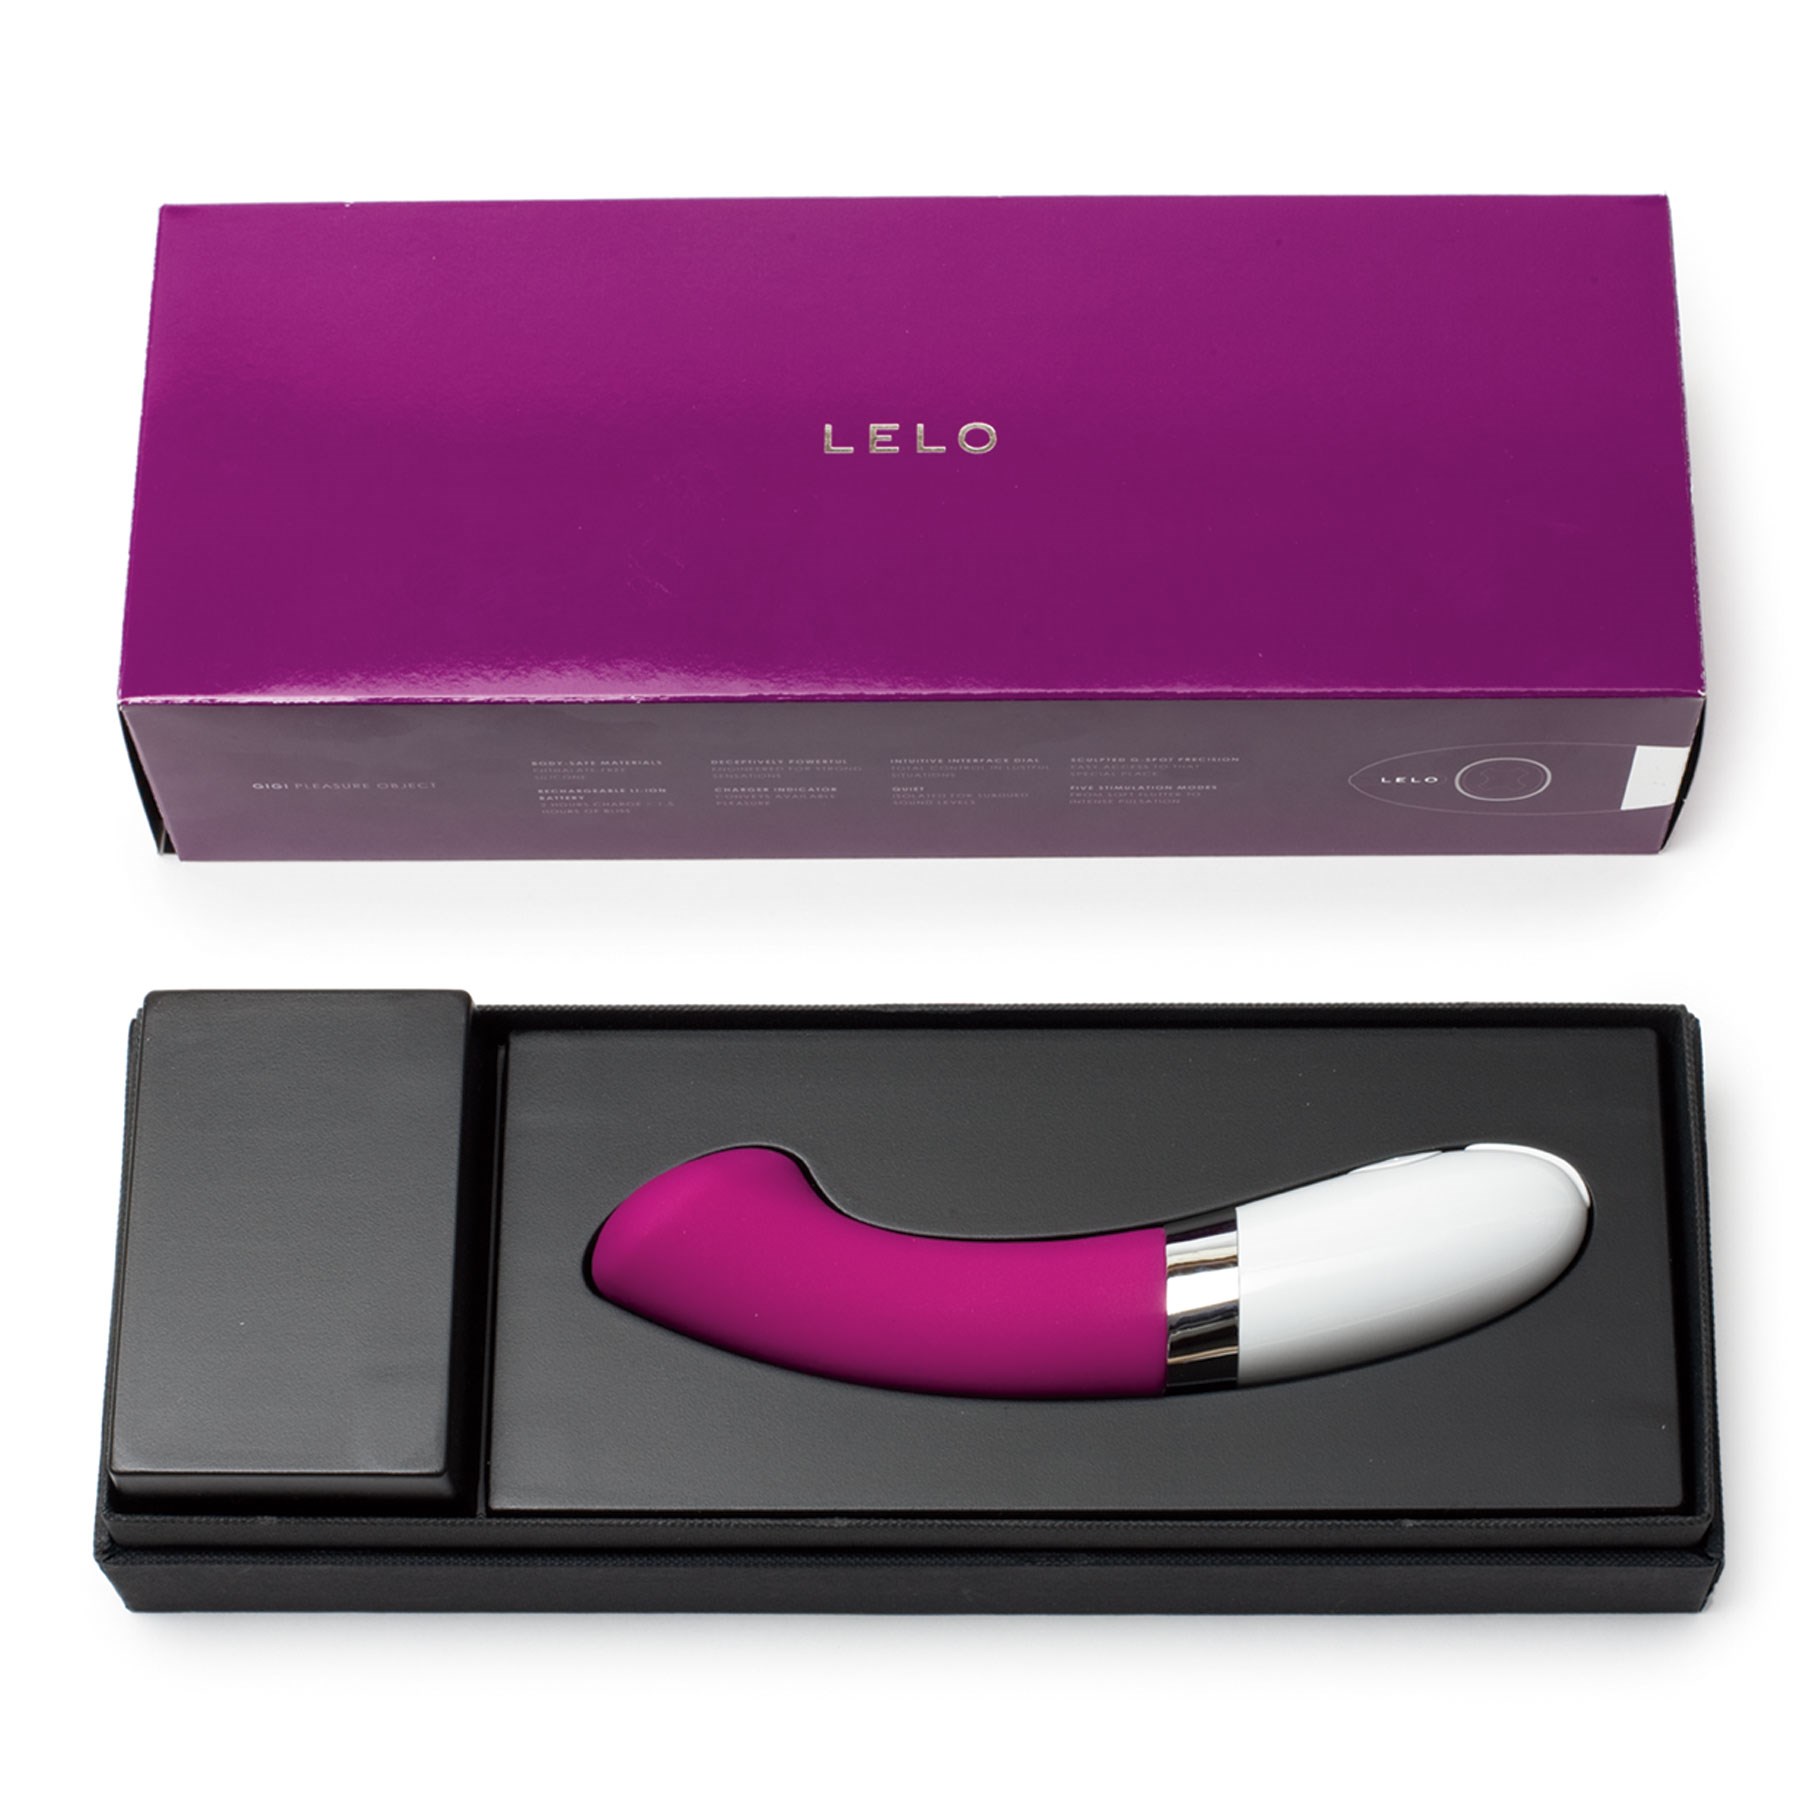 Lelo Gigi 2 Pleasure Object packaging